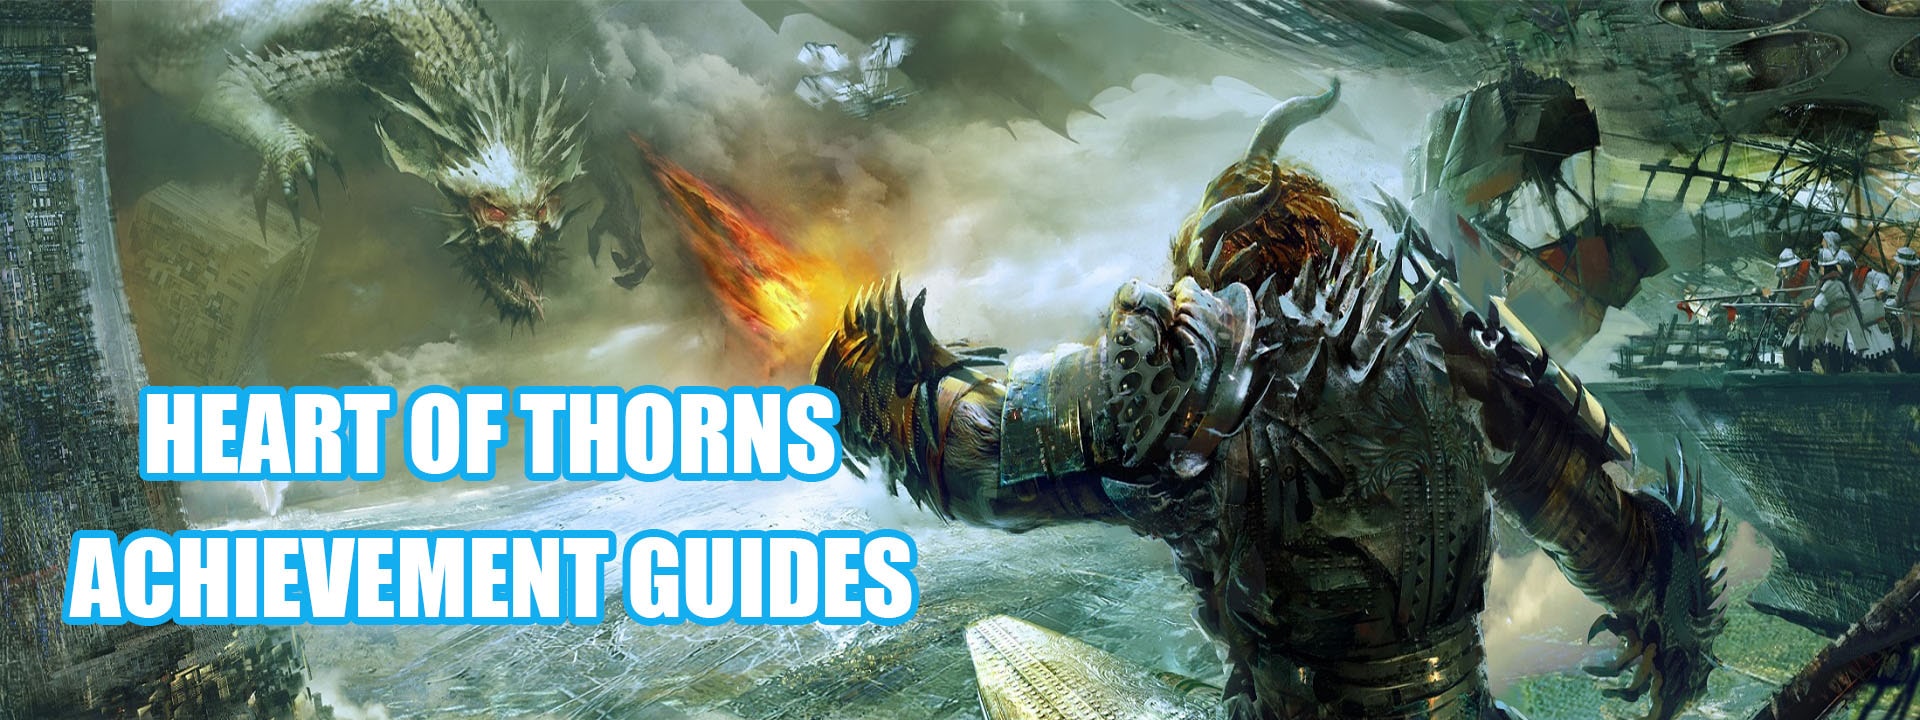 GW2 - Heart of Thorns Guides - Achievements Guides - GuildJen